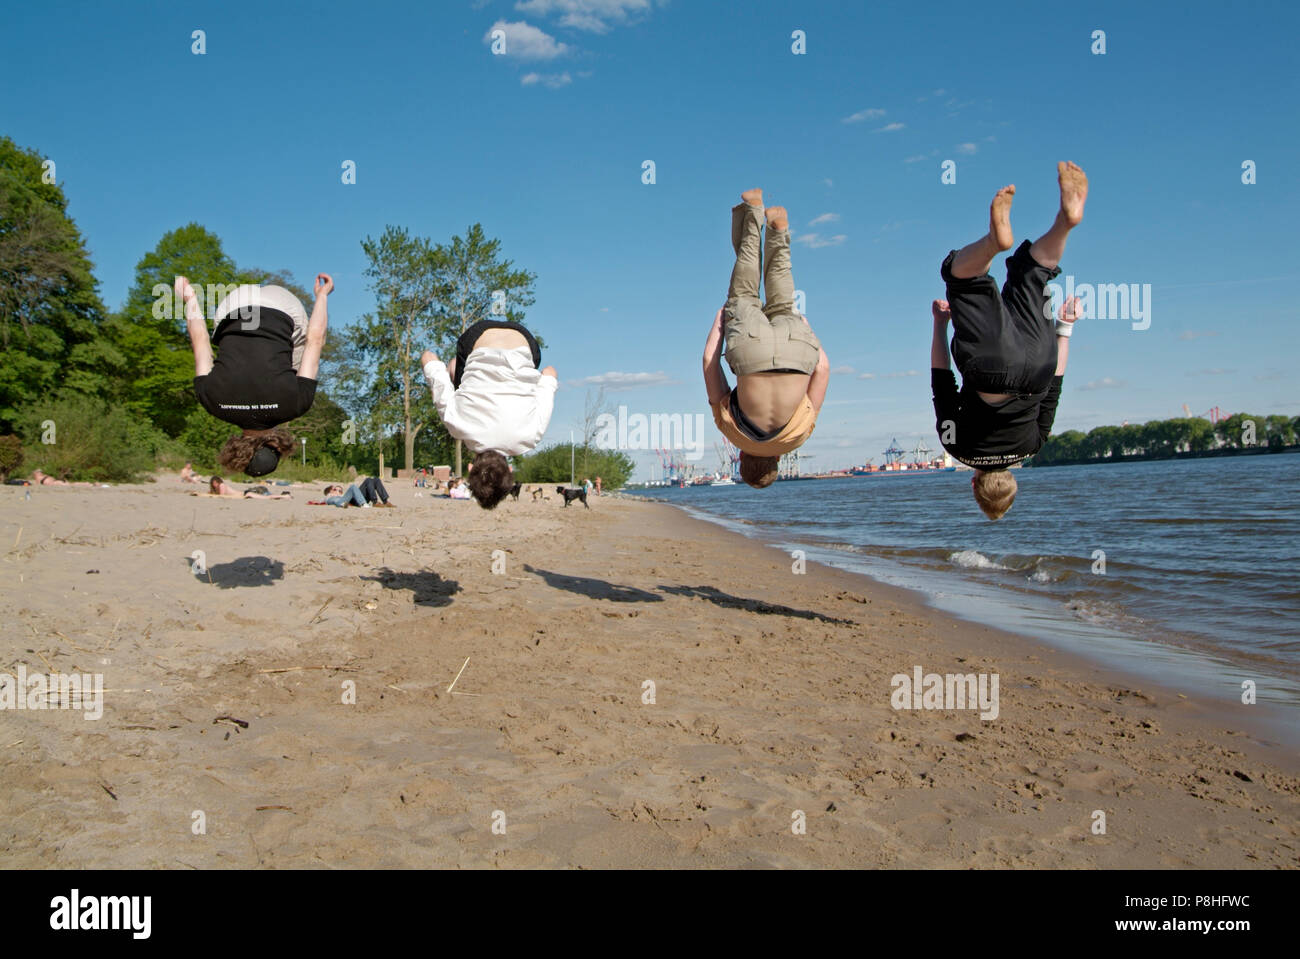 Vier junge Maenner trainieren gemeinsam ihren Rueckwarts-Salto am Hamburger Elbe-Strand in Oevelgoenne. Stock Photo